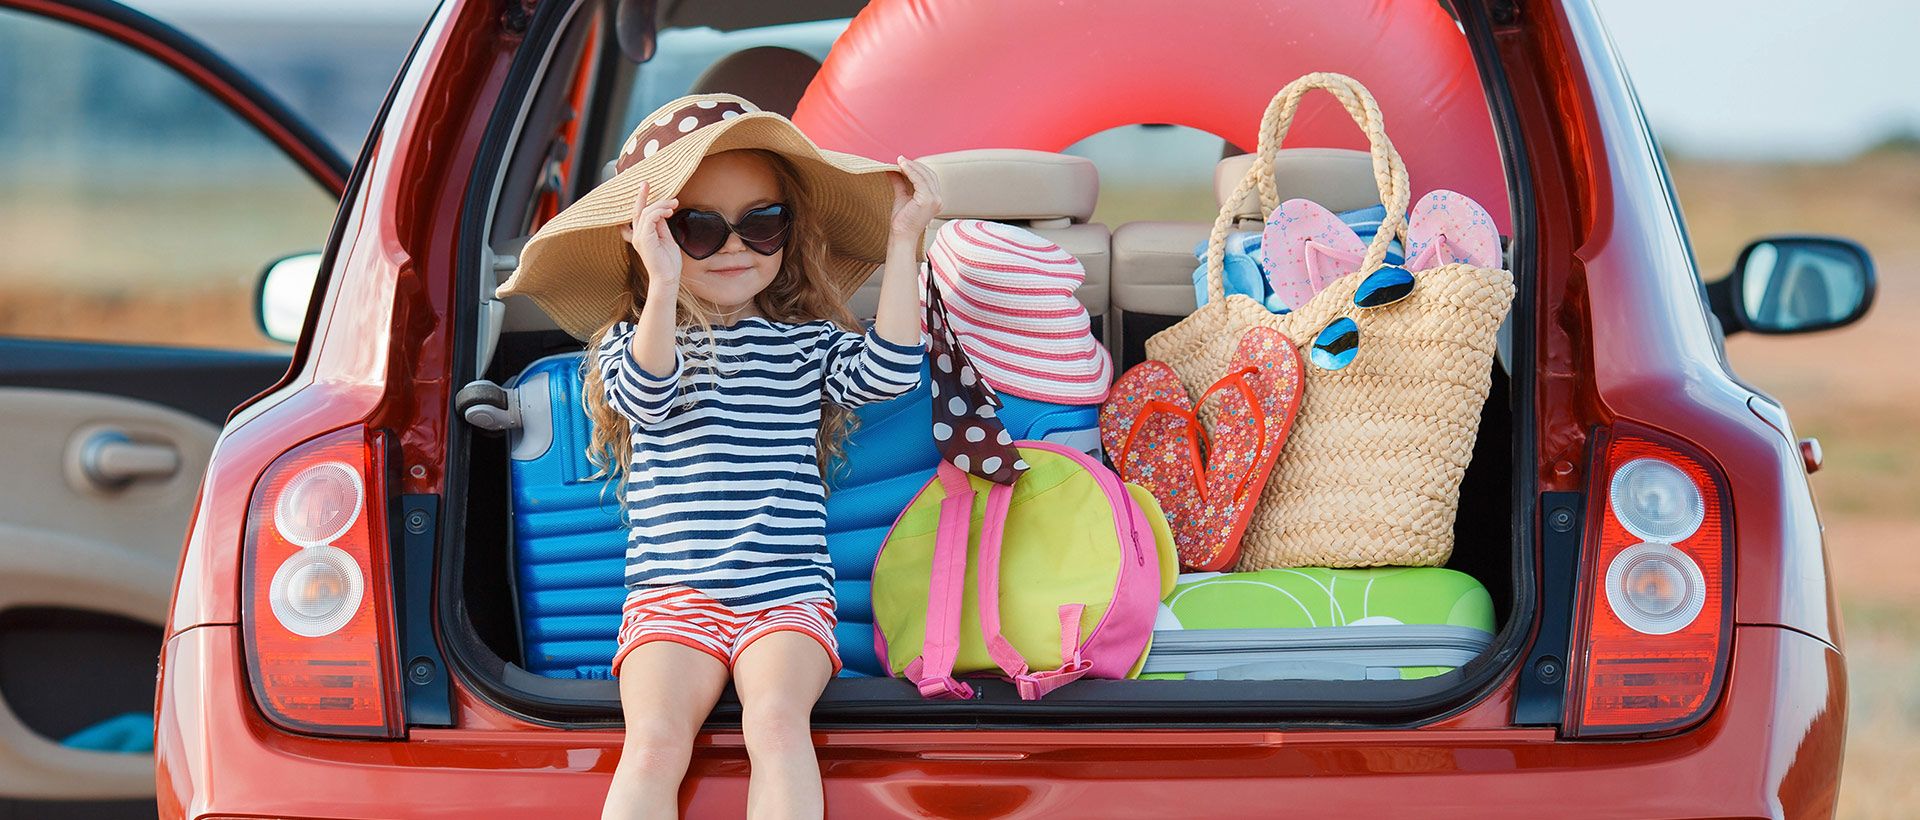 Partir en vacances avec enfants : 5 conseils pratiques pour un séjour serein !